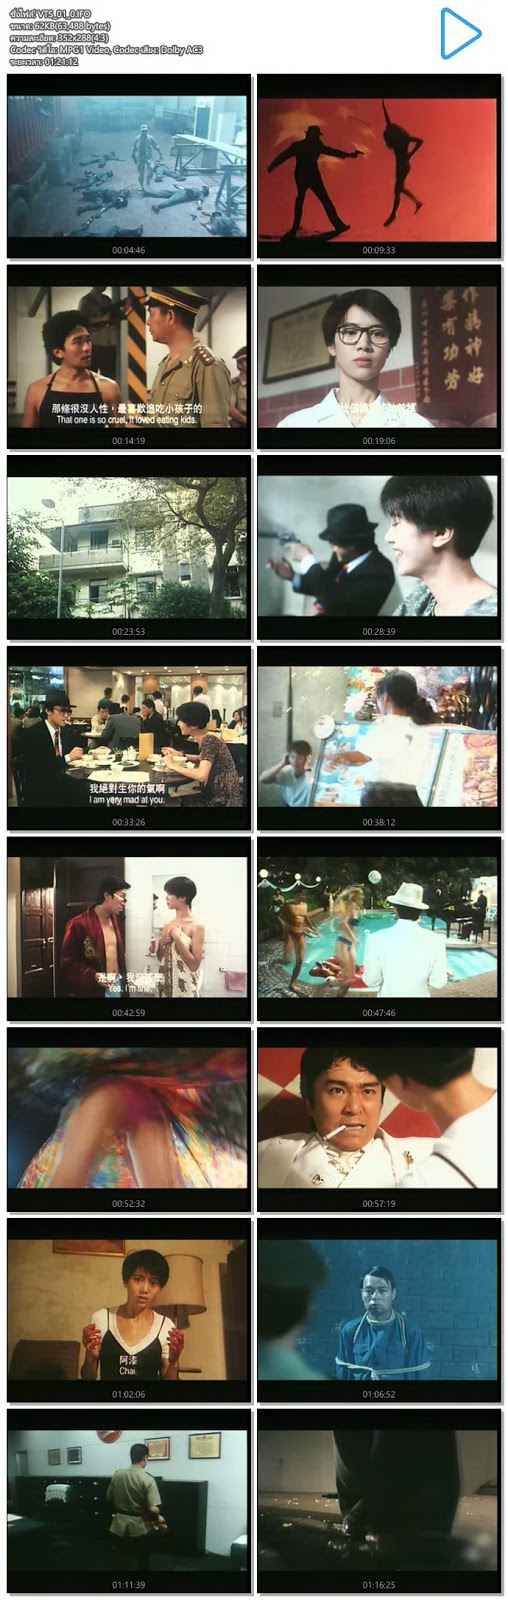 [จีน][Boxset] รวมหนังโจวซิงฉือ 36 เรื่อง เป็น V2D 9 แผ่น จาก VCD Master [V2D Master][พากย์ไทย][.ISO] JC5_MovieHdClub_SS